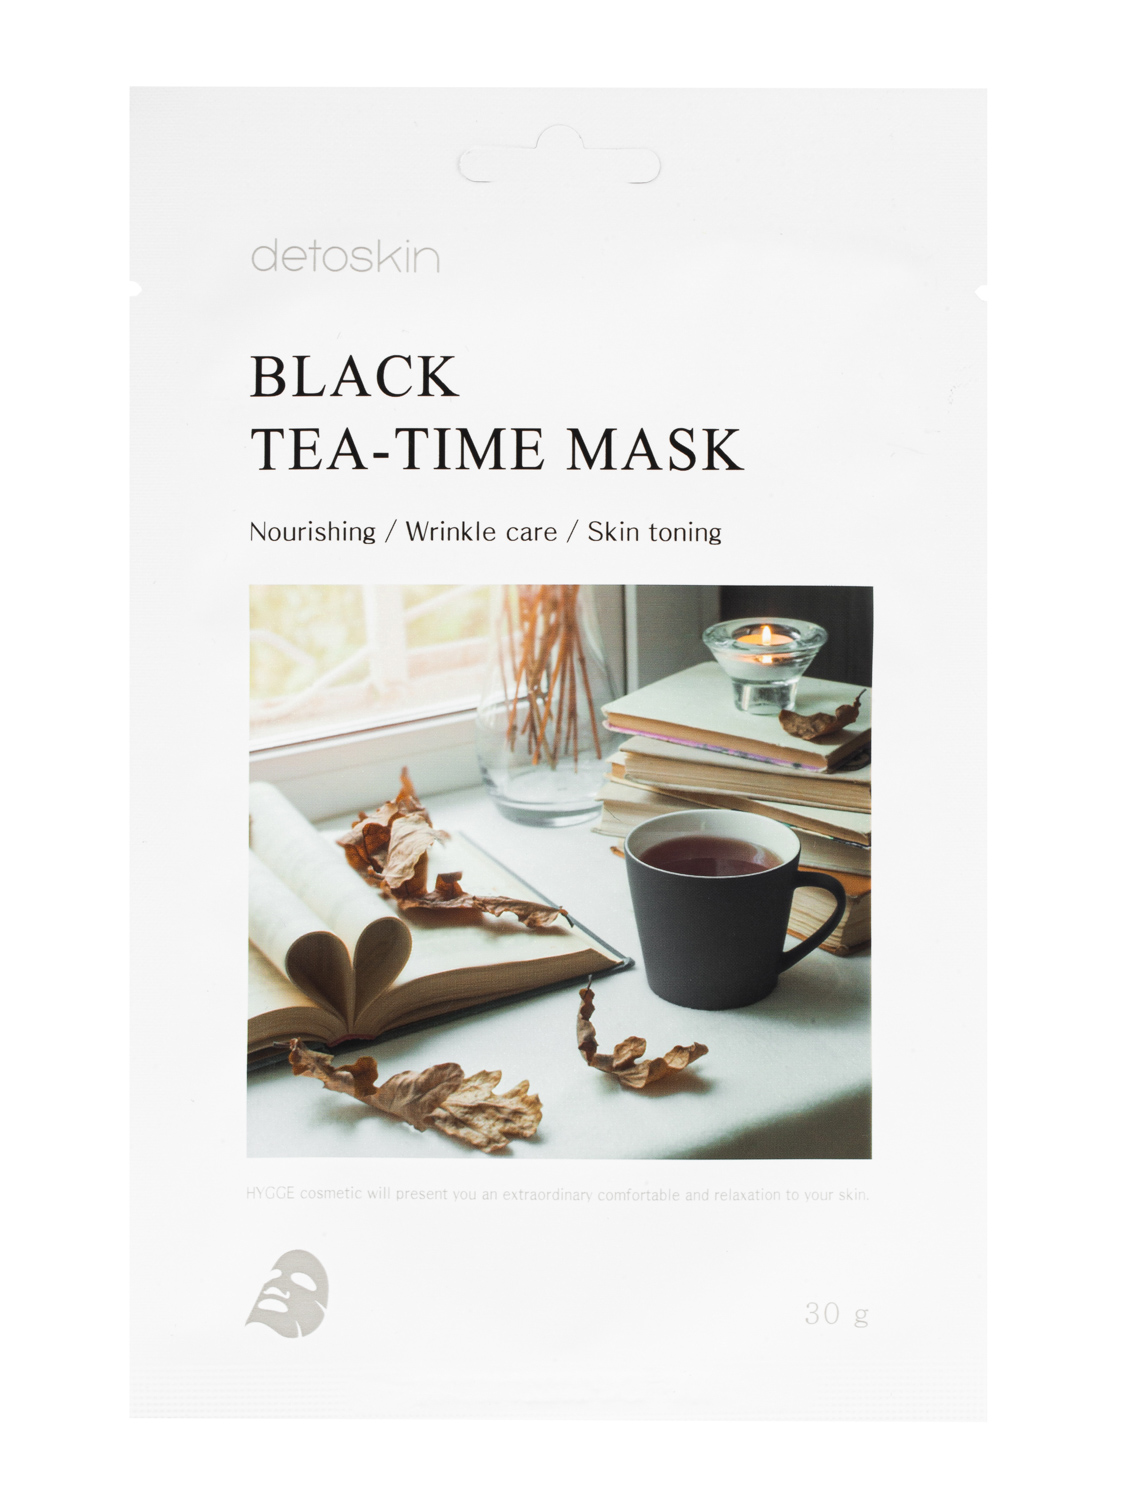 Омолаживающая и тонизирующая тканевая маска DETOSKIN с экстрактом черного чая. Корея 30ml